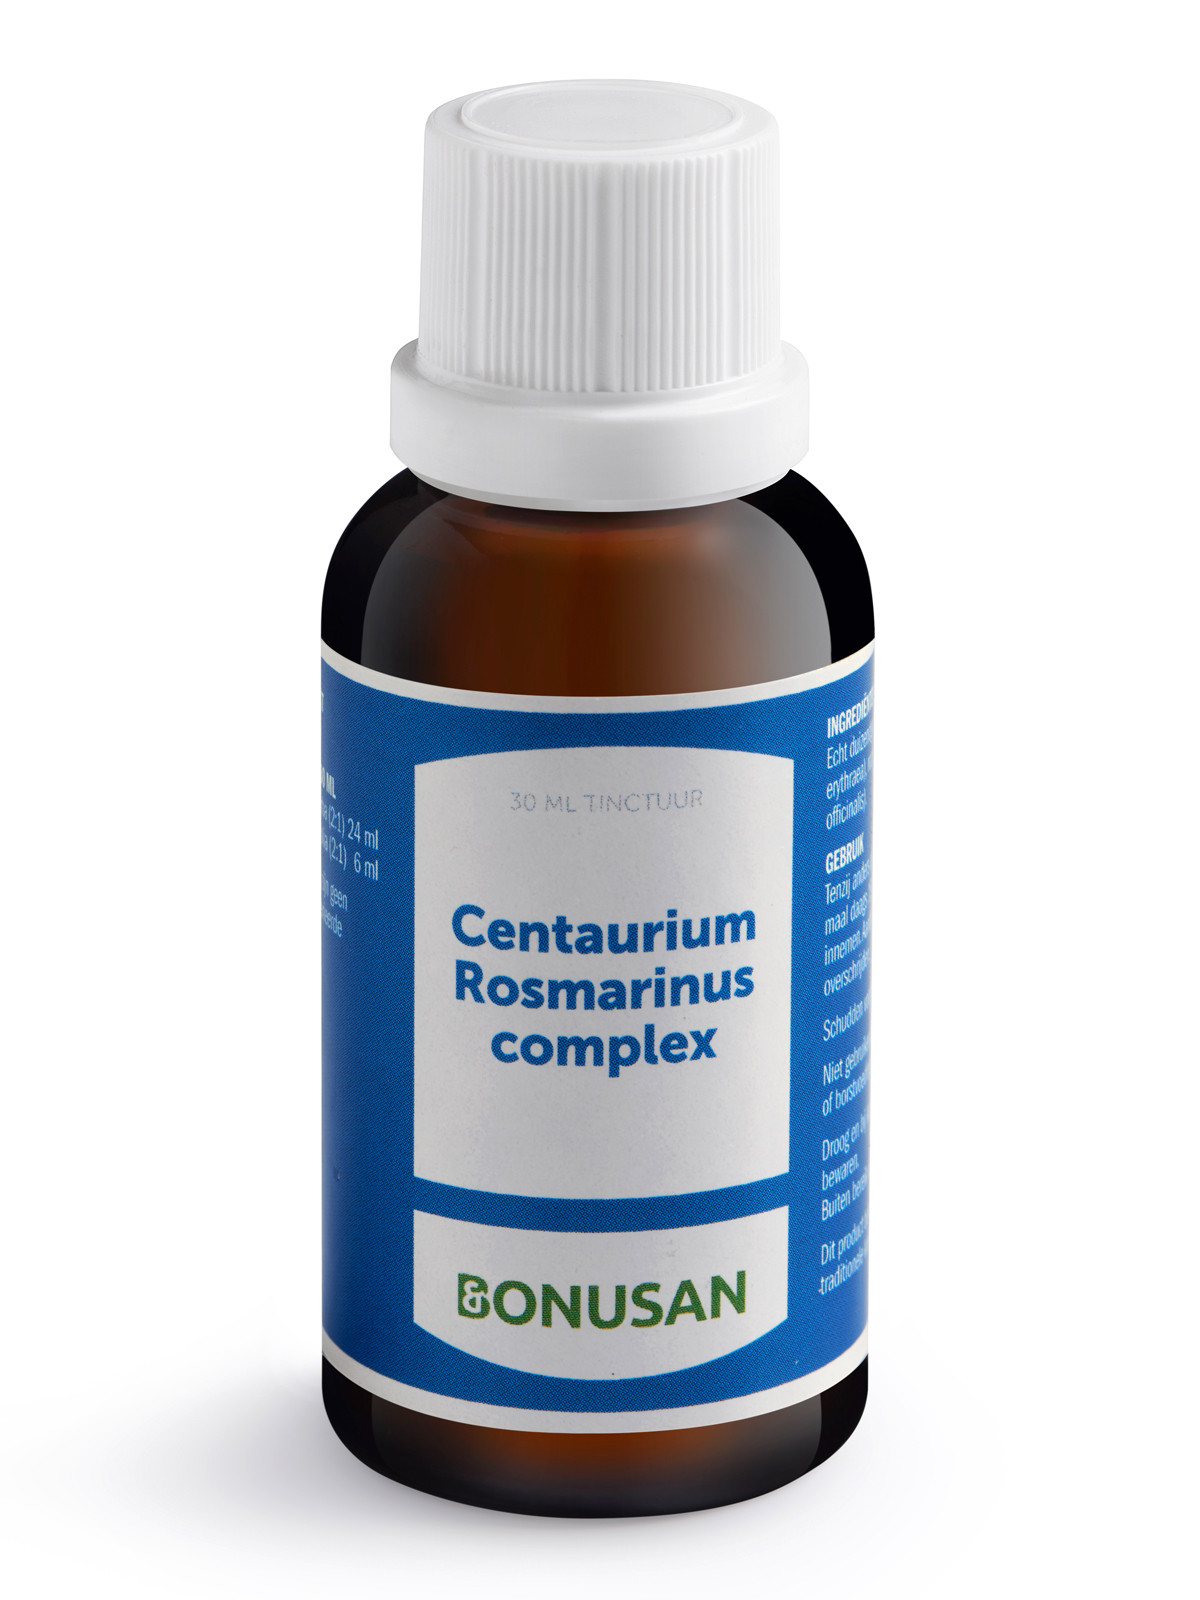 Centaurium Rosmarinus complex